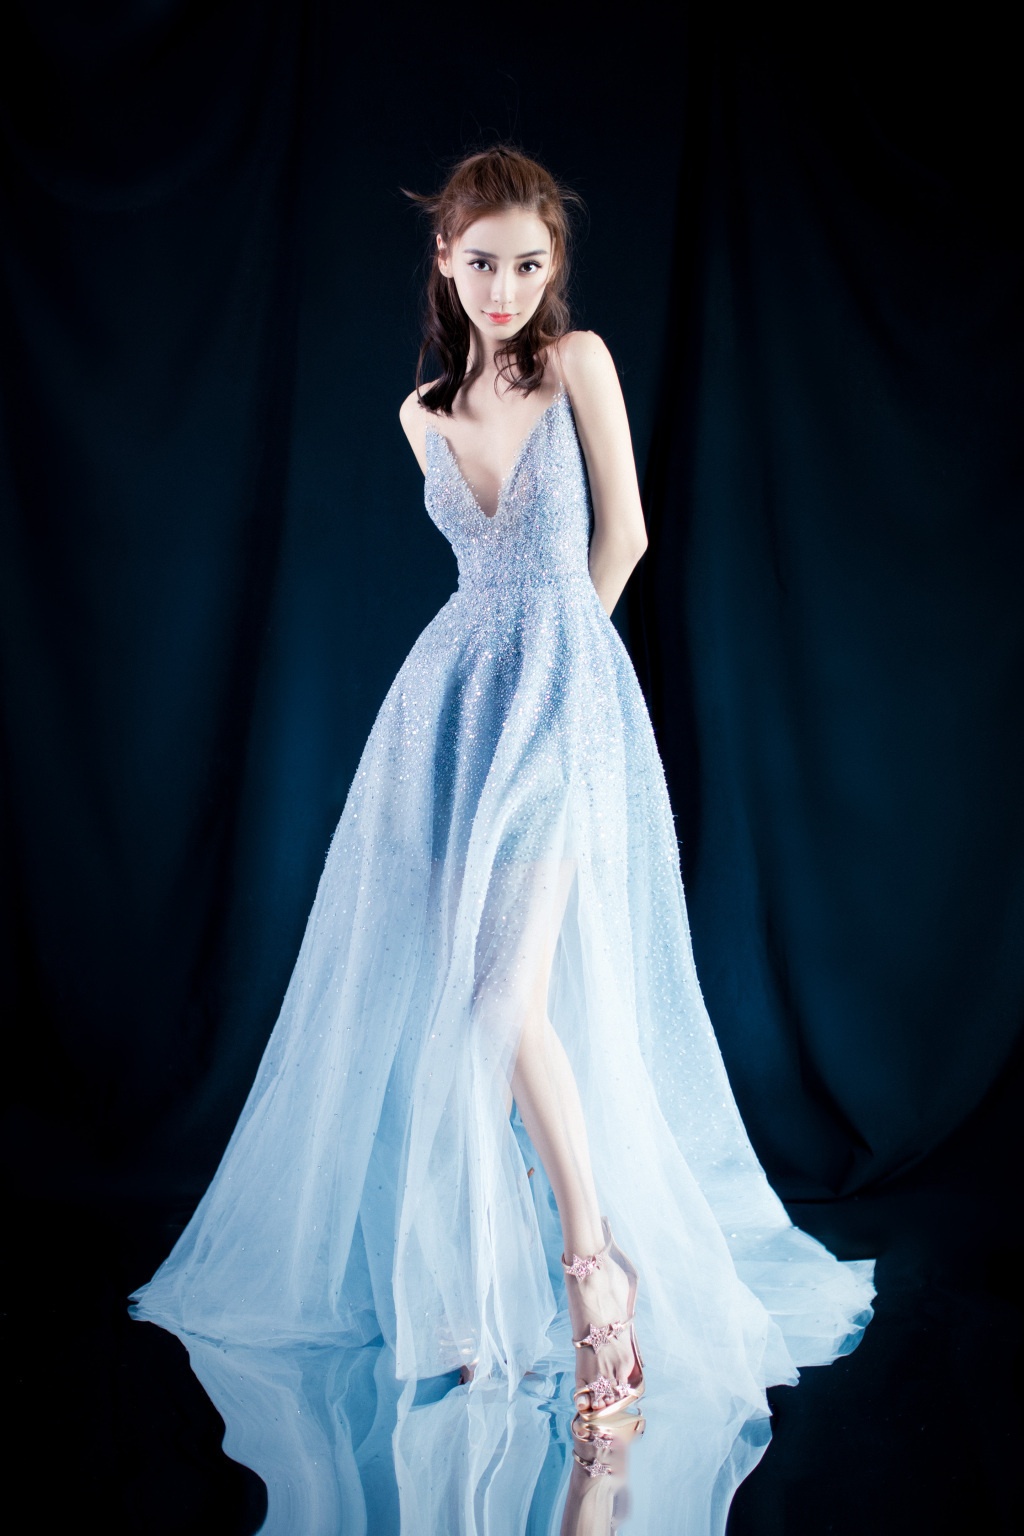 杨颖时尚写真,身着浅蓝透视薄纱裙,飘逸灵动优雅别致,低胸性感大秀